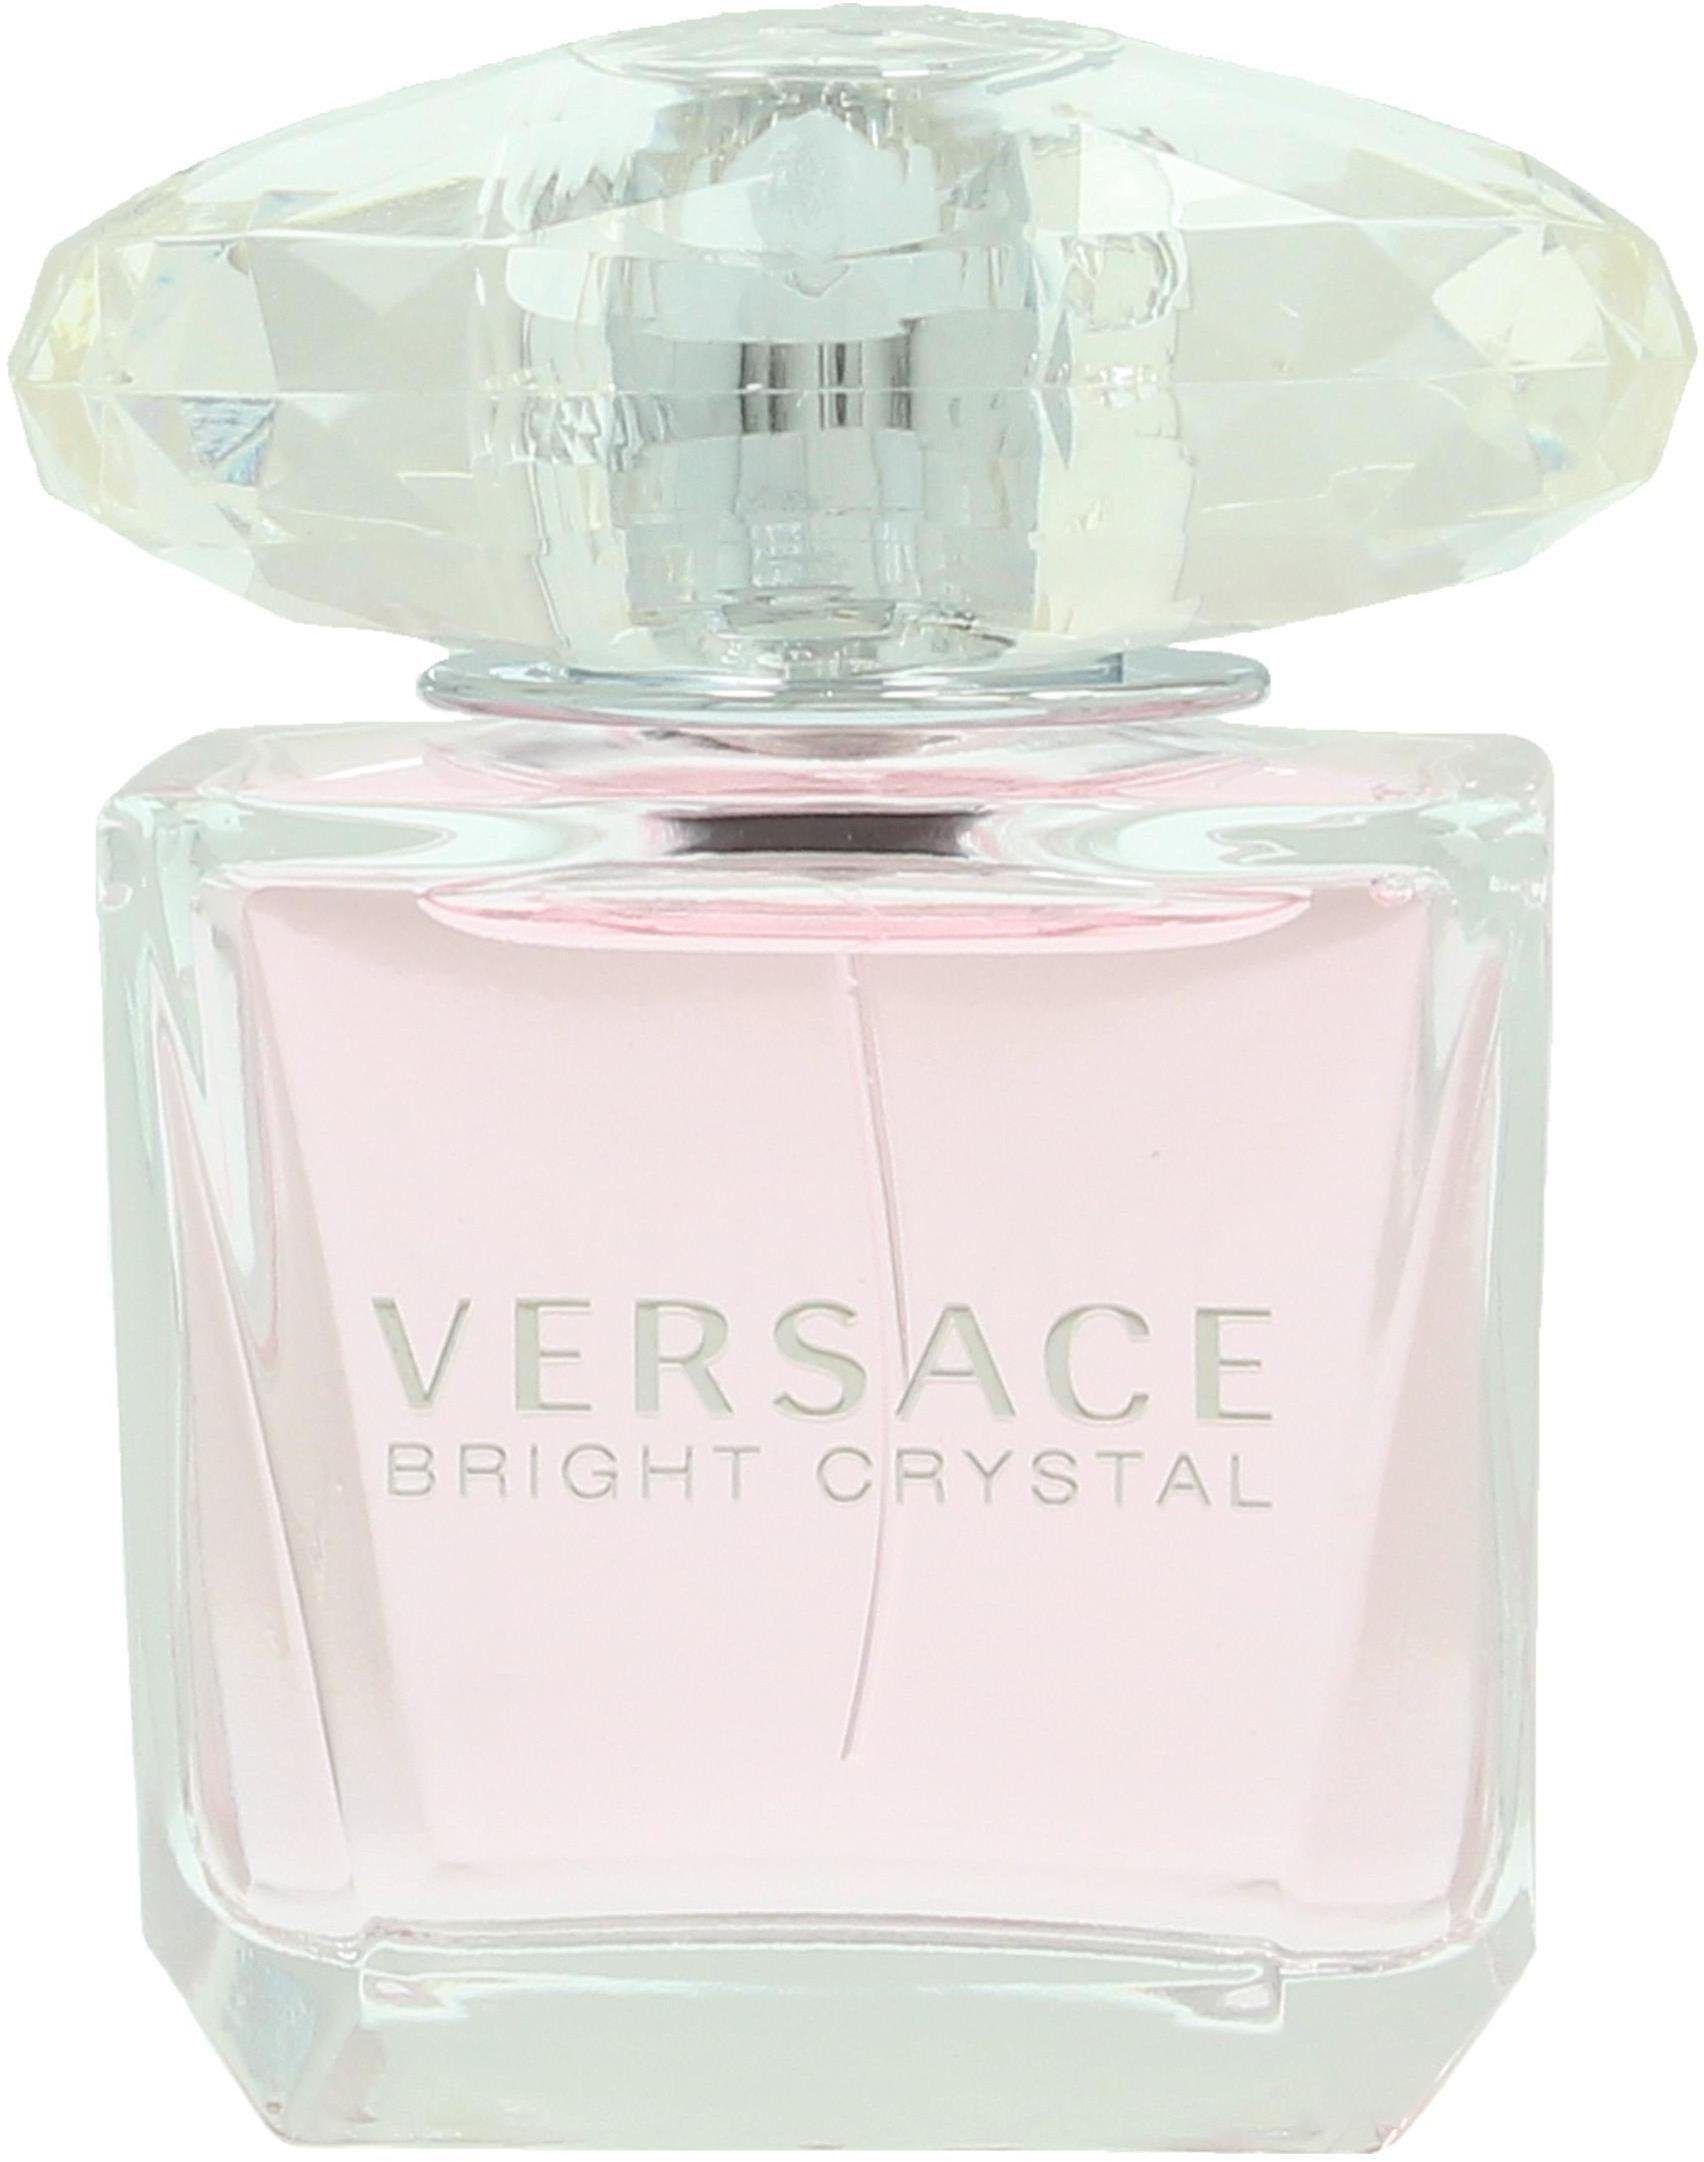 Versace Bright Crystal Toilette Eau de